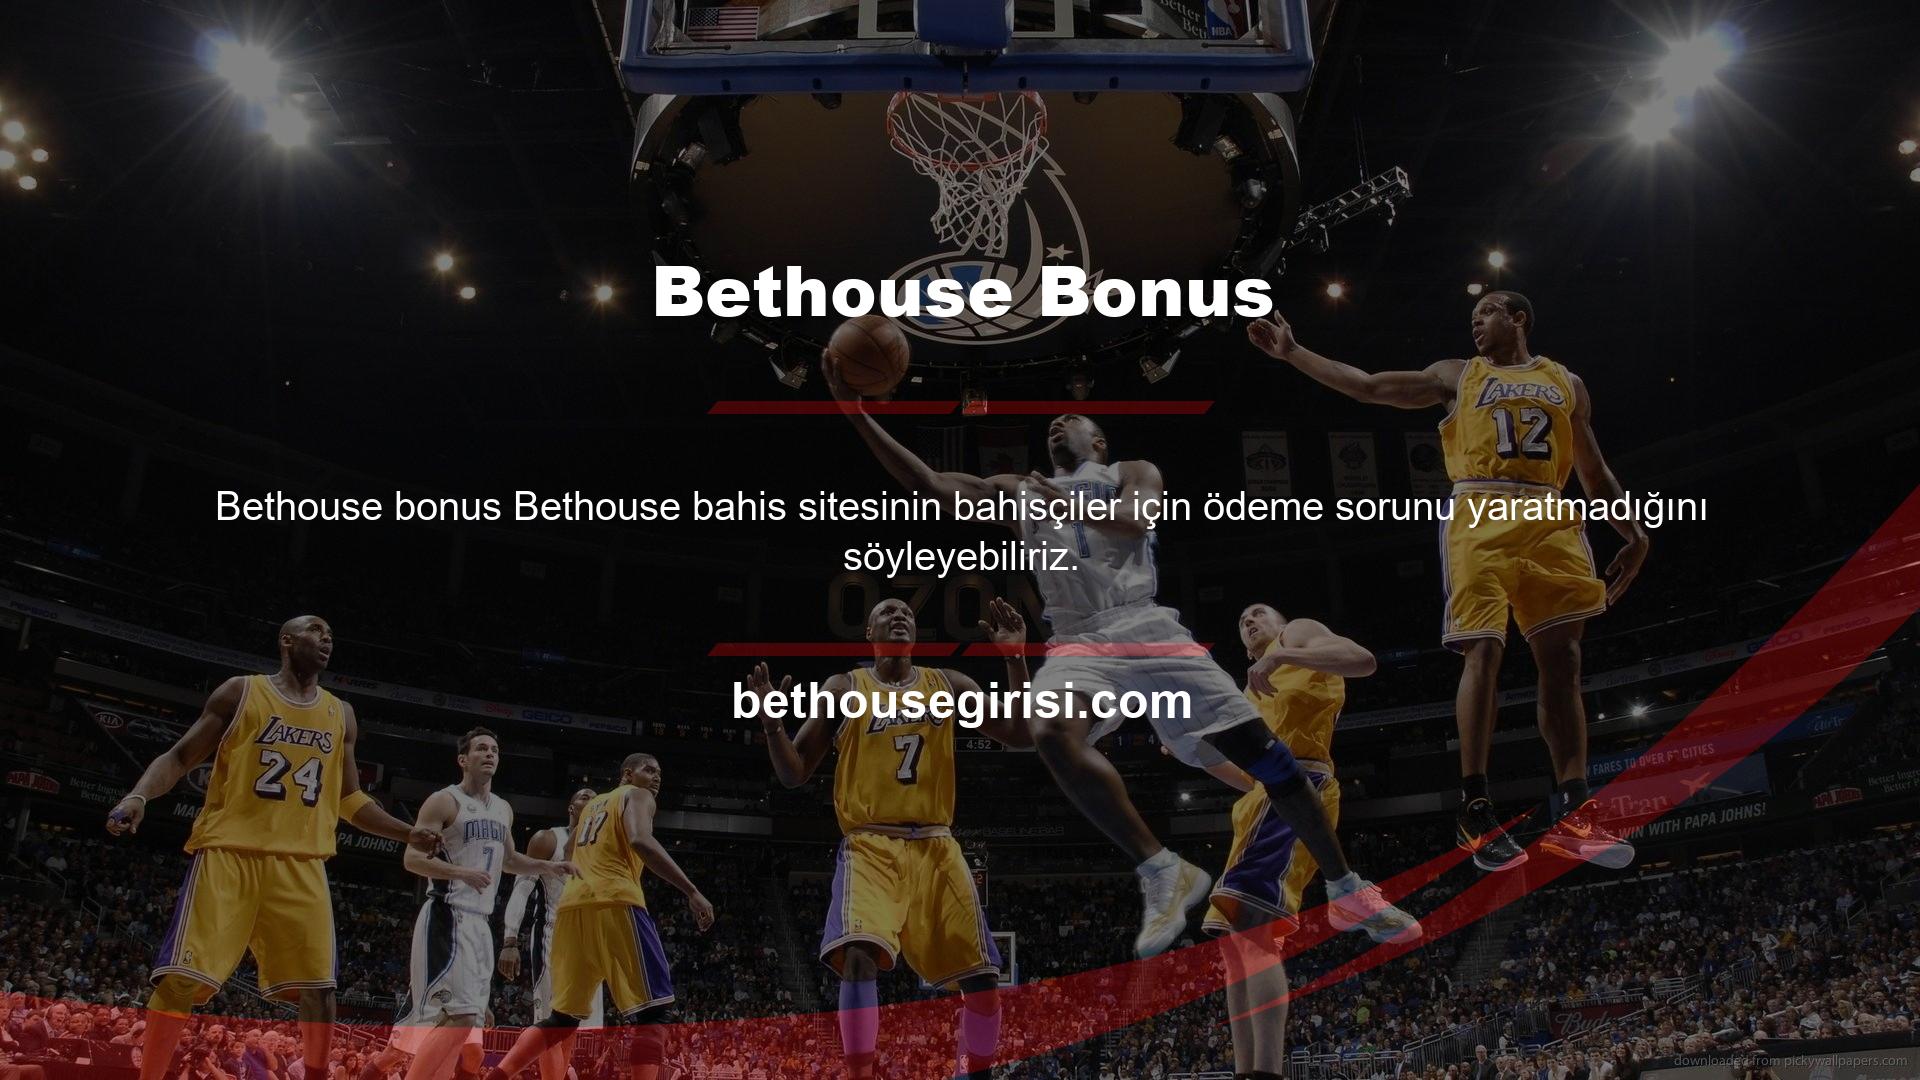 Bethouse canlı bahis ve casino oyun sitesi de müşterilerine bu ruhla hizmet veren bahis şirketlerinden biridir